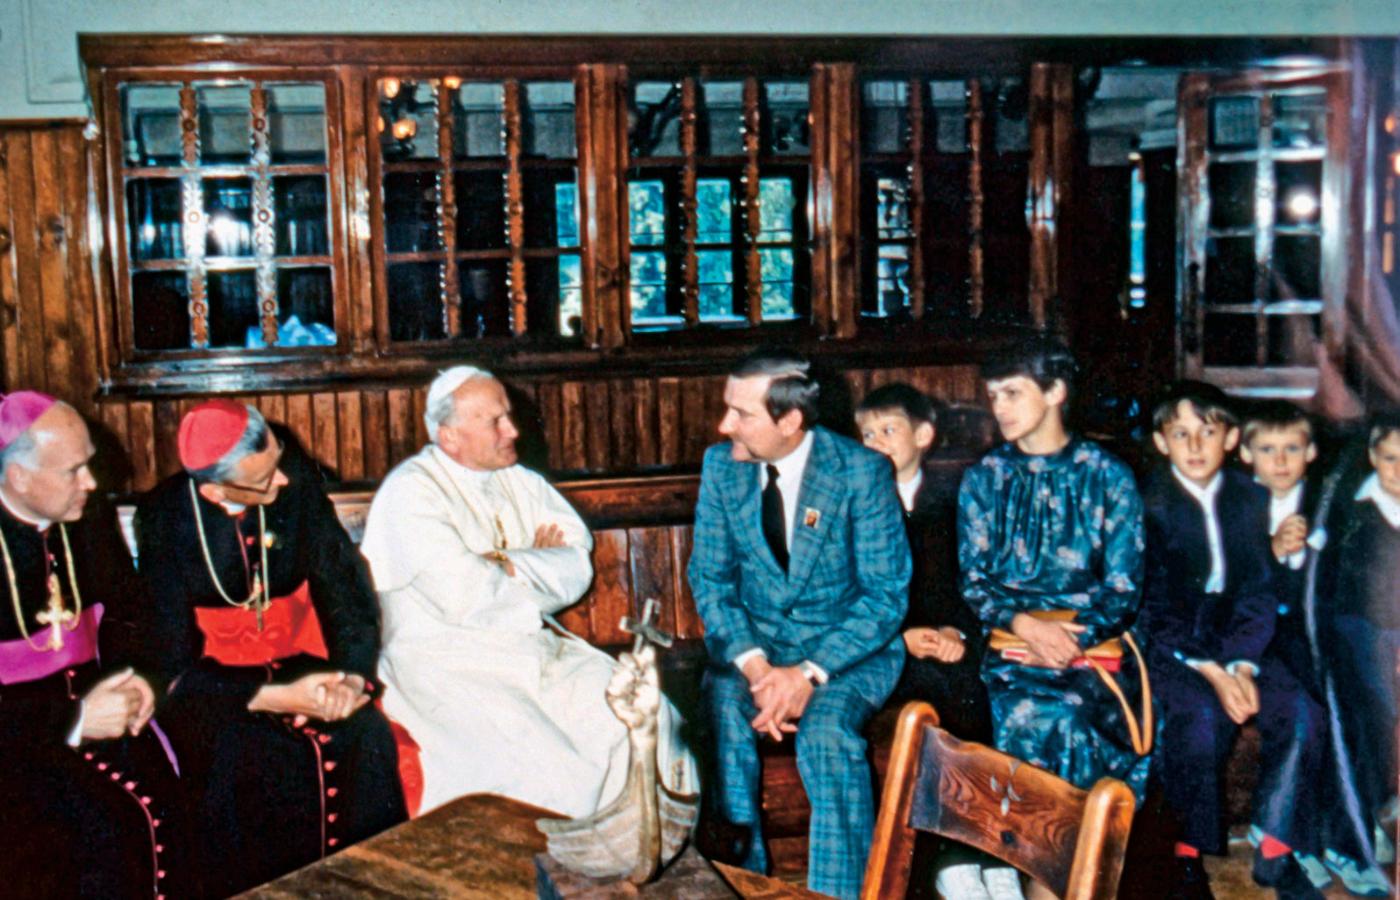 Oficjalne spotkanie Jana Pawła II z Lechem Wałęsą i jego rodziną w tatrzańskim schronisku w Dolinie Chochołowskiej 23 czerwca 1983 r.